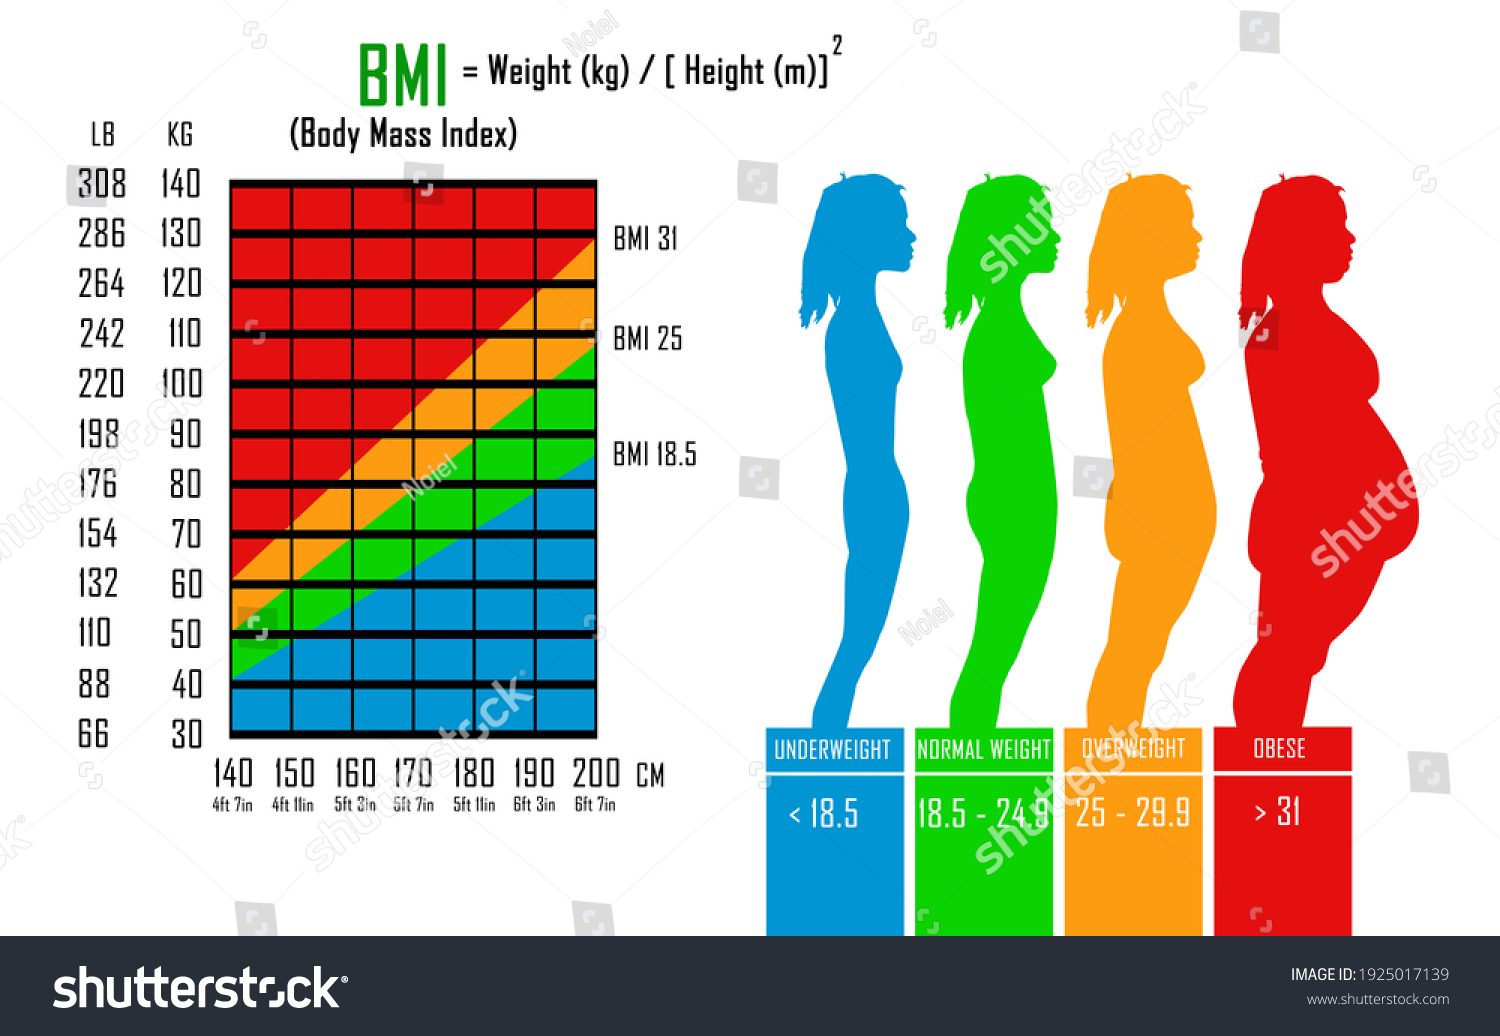 bmi index calculator women